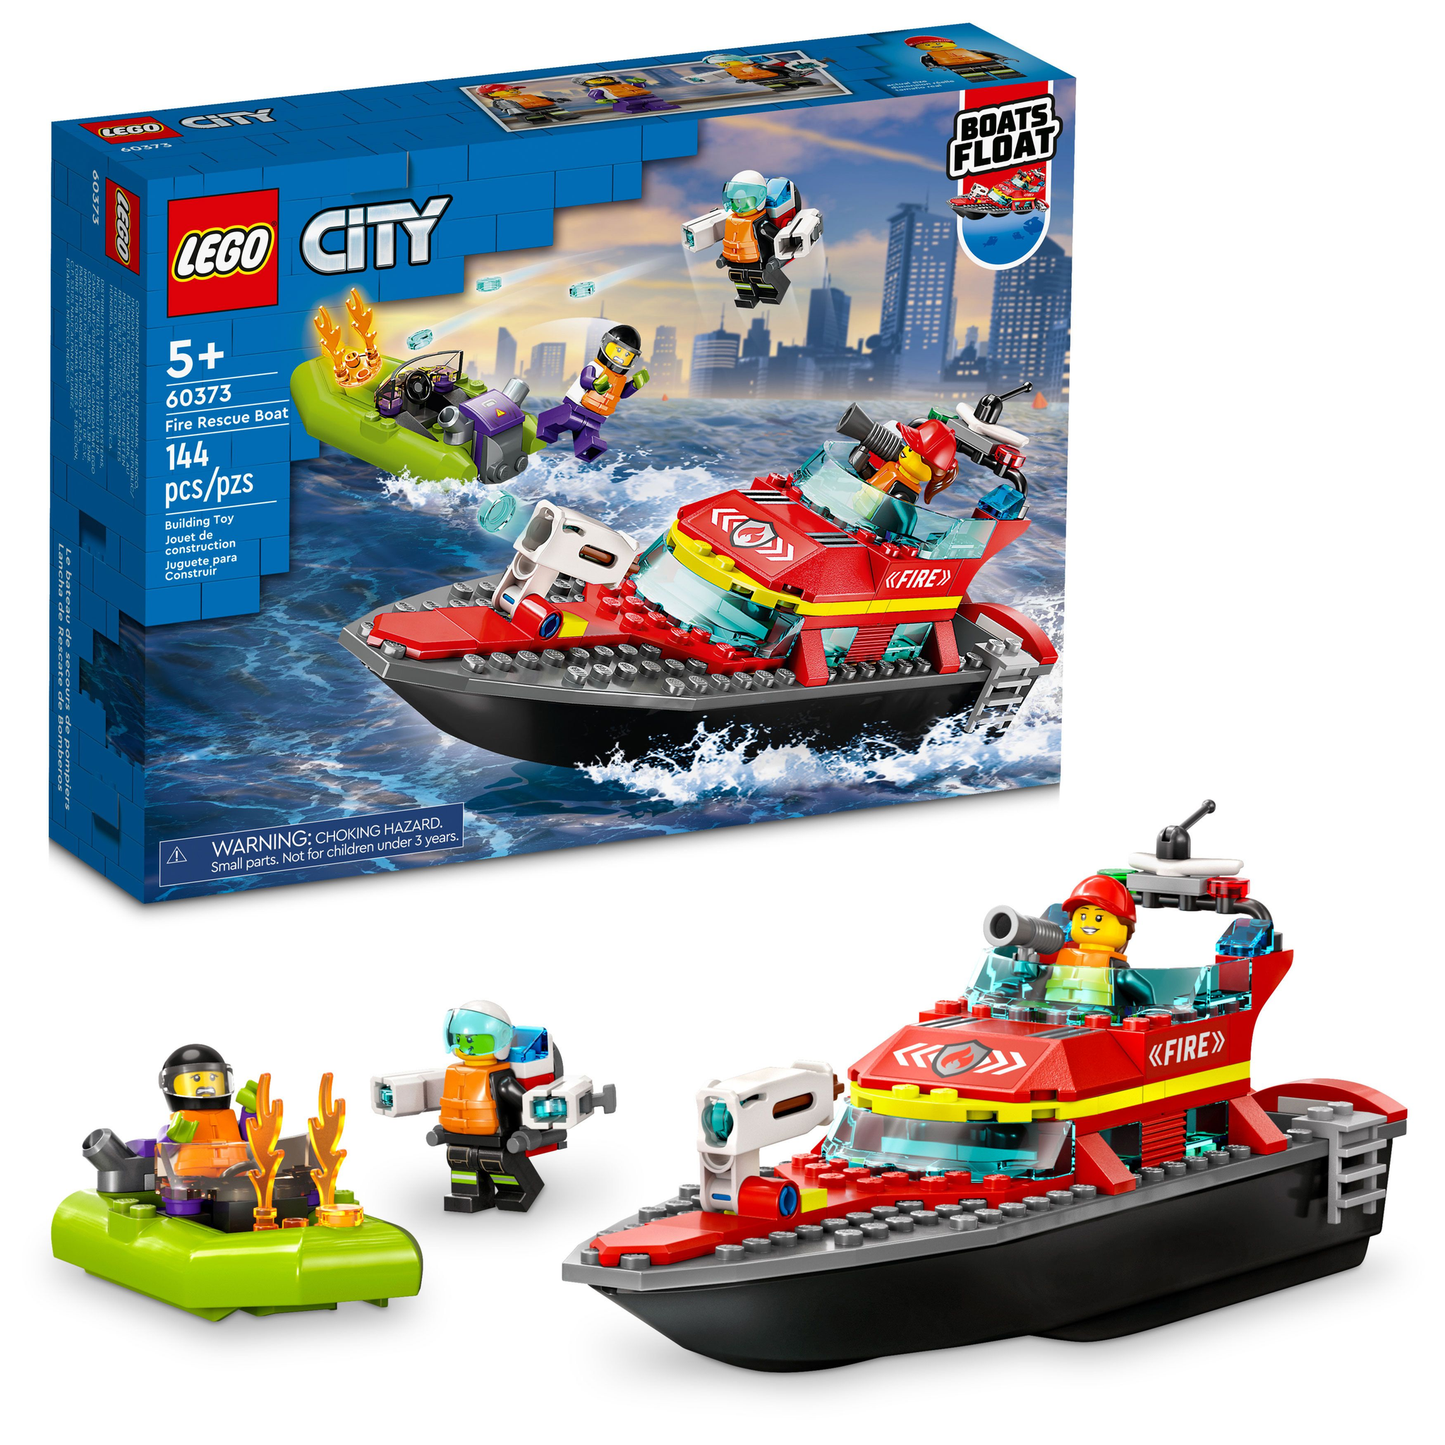 60373 Fire Rescue Boat